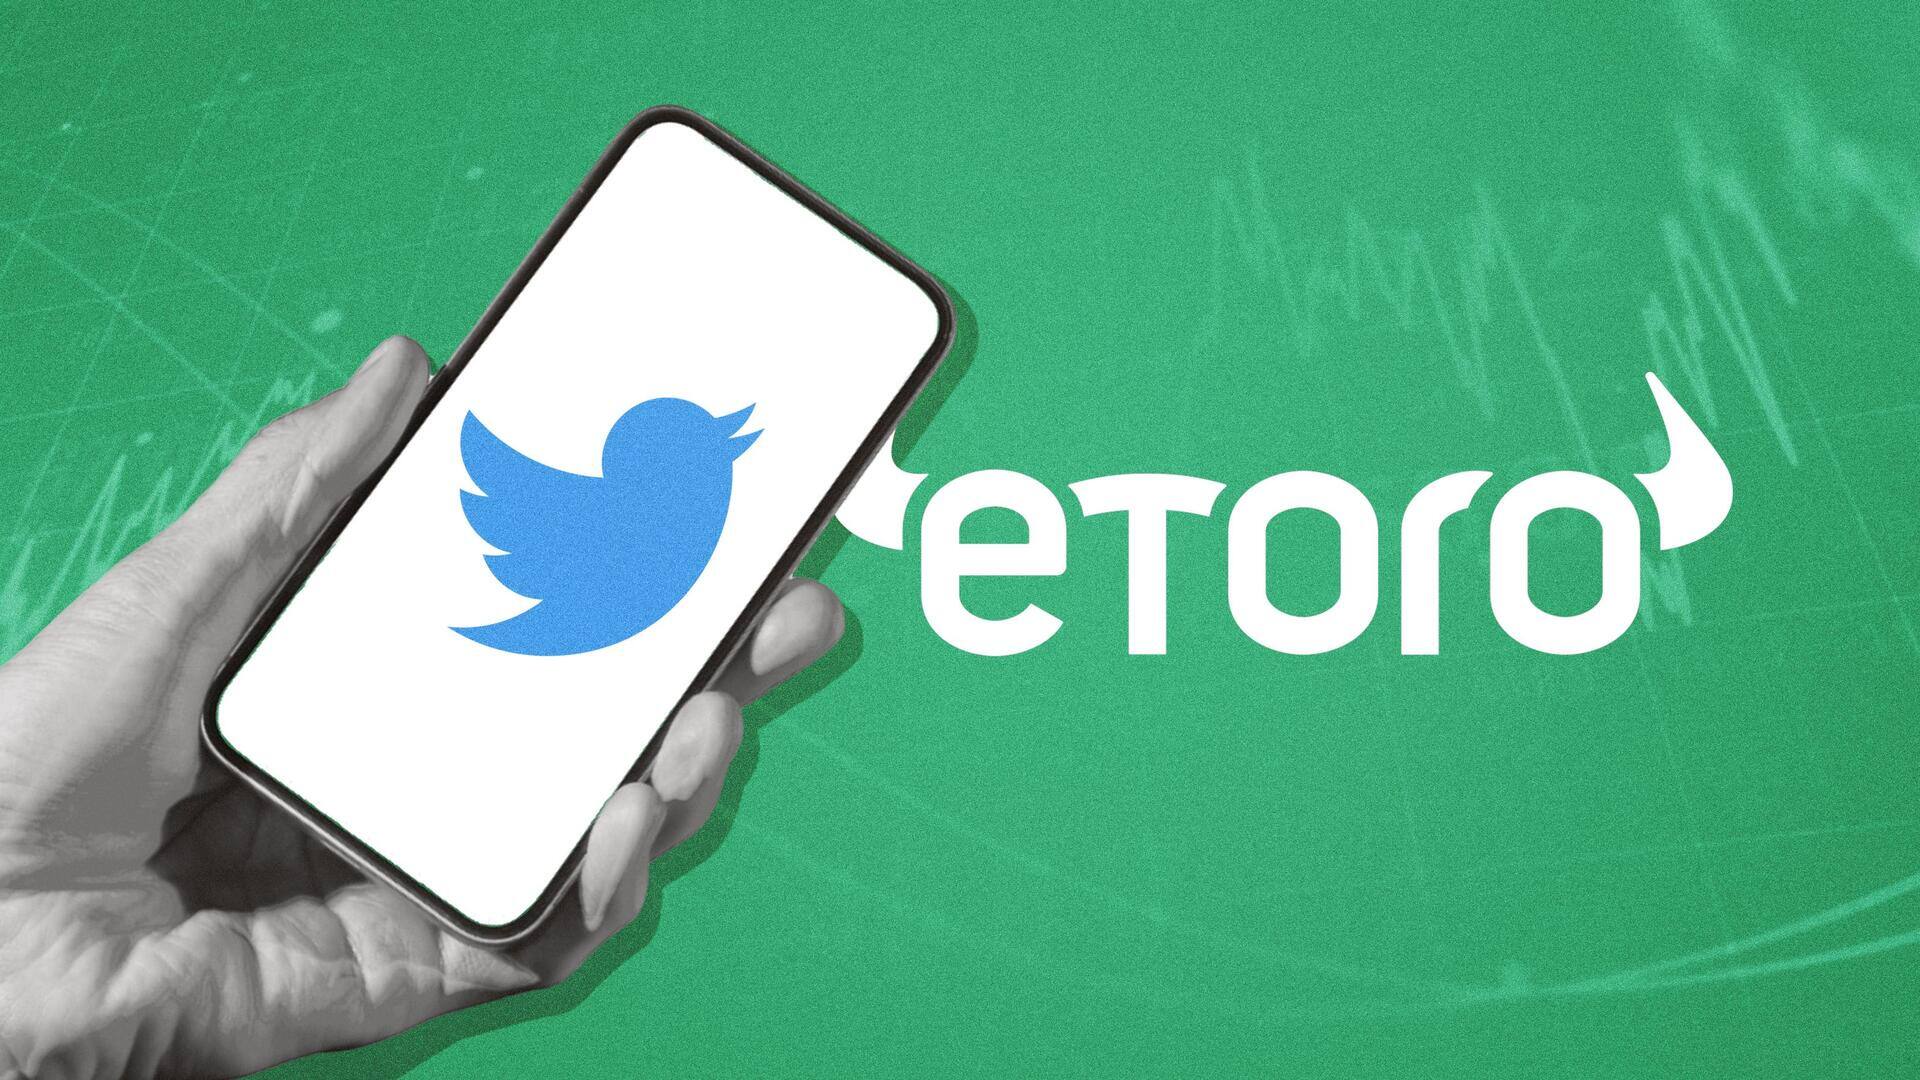 ट्विटर और ईटोरो ने की साझेदारी, यूजर्स को रियल-टाइम मिलेगी स्टॉक और उनकी कीमत की जानकारी